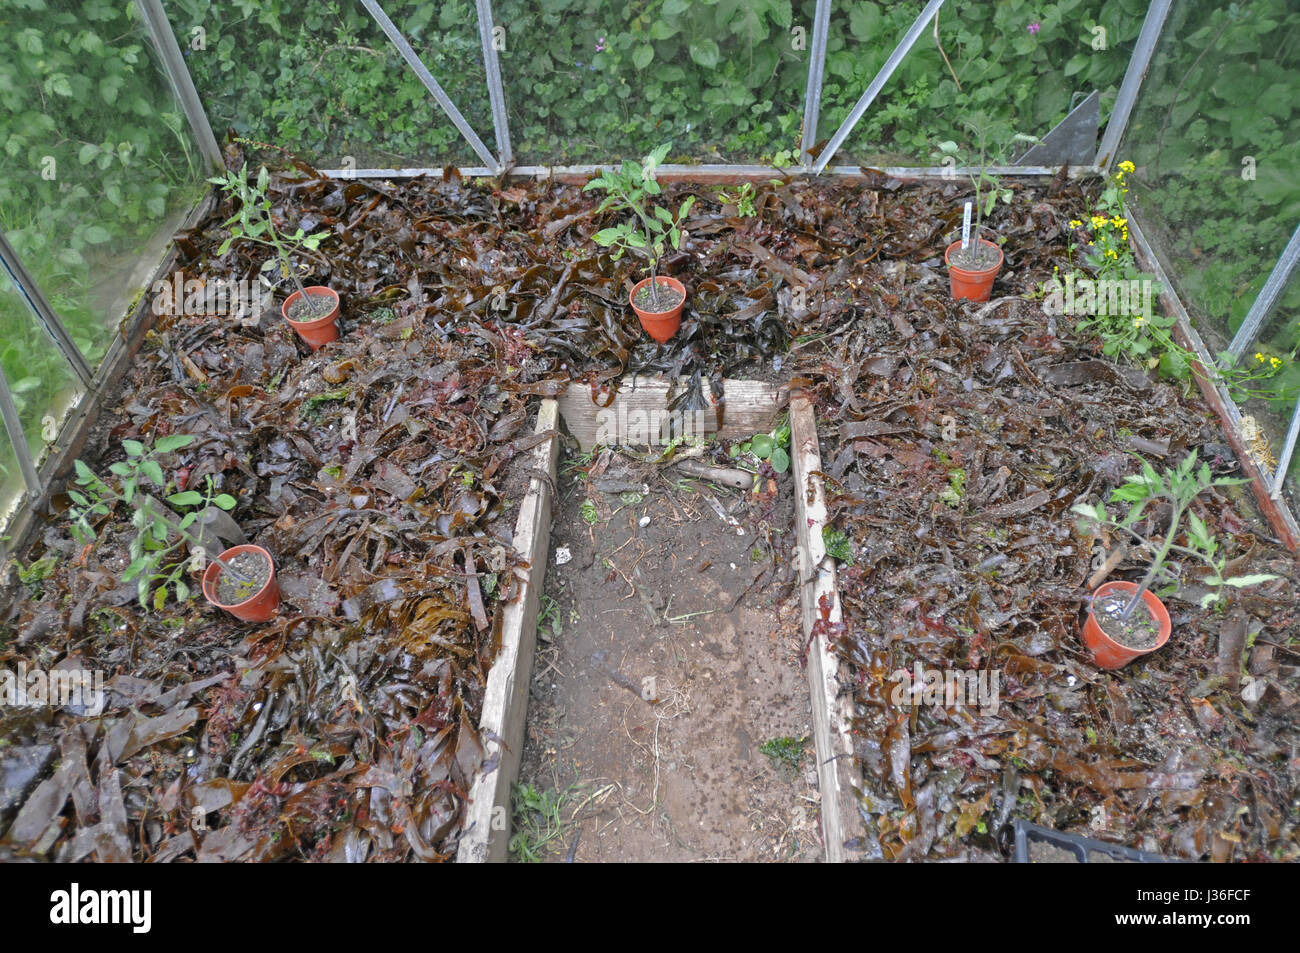 Les algues fixées sur le sol dans une serre pour augmenter la fertilité. Les plants de tomates est placé avant la plantation. Banque D'Images